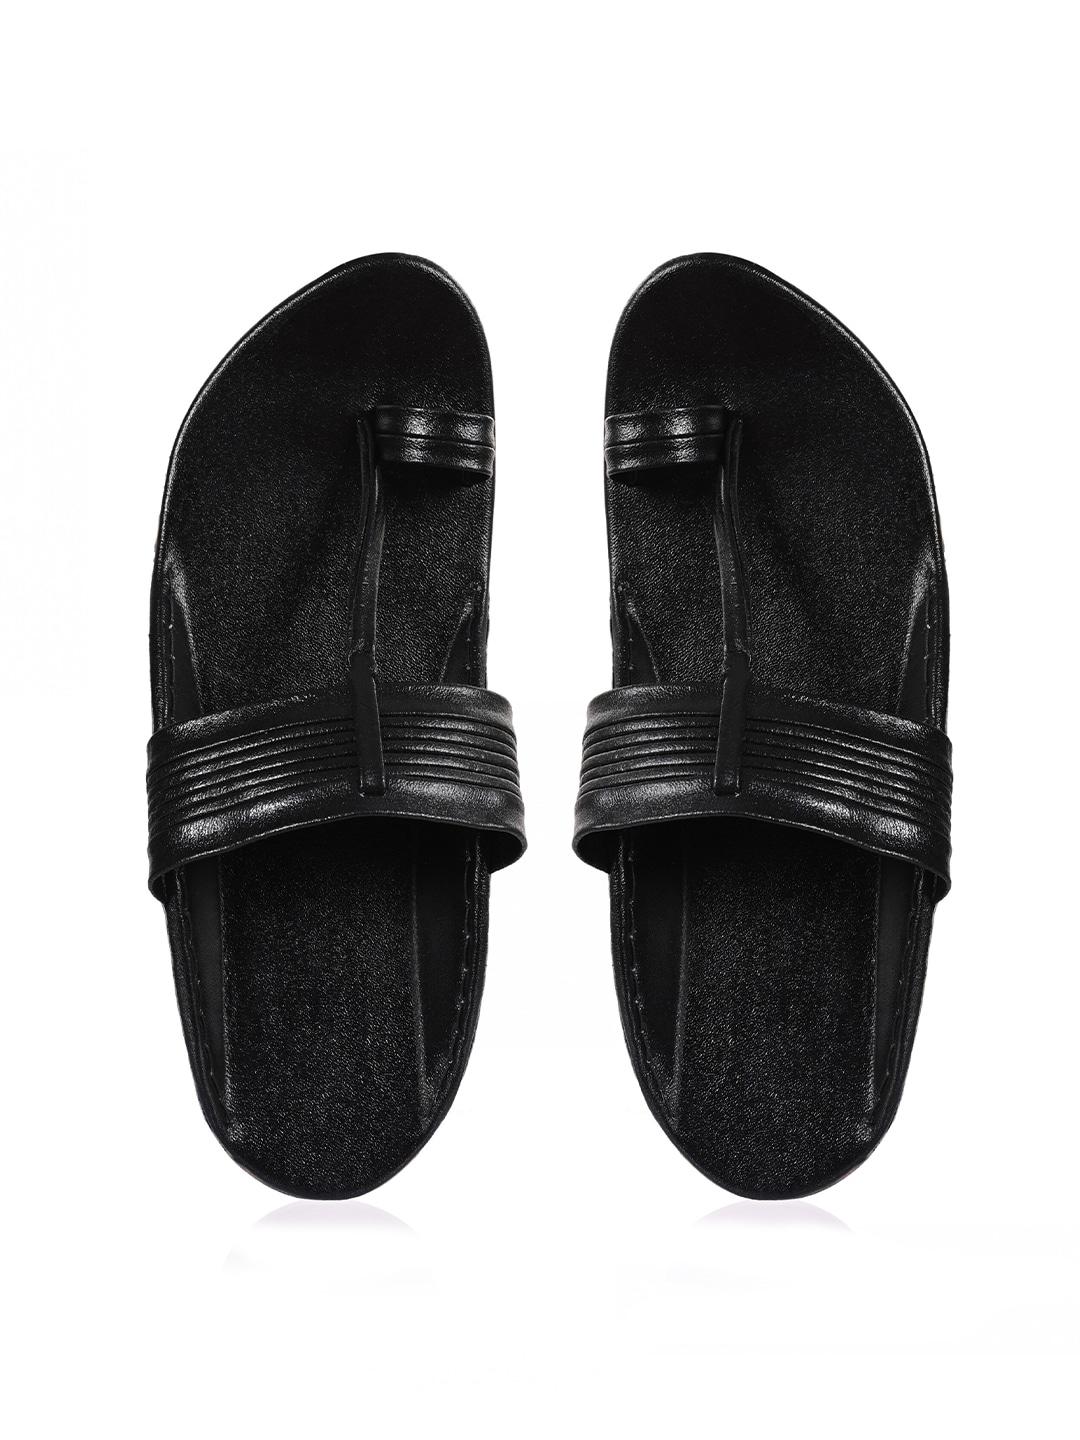 aristitch men black ethnic leather comfort sandals